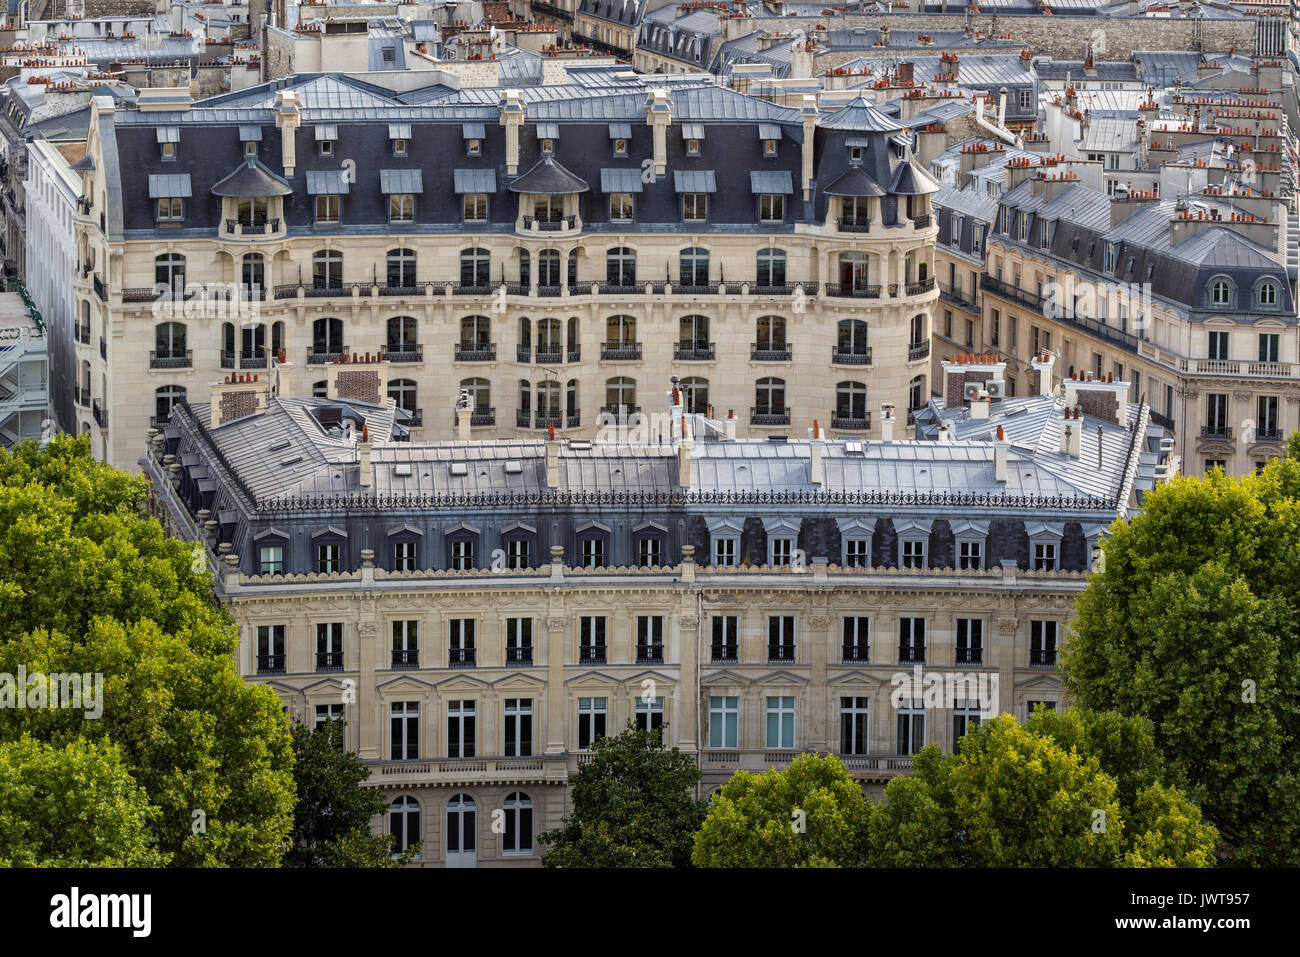 Edificio in stile haussmanniano, facciate e tetti a mansarda in estate. Sedicesimo arrondissement di Parigi. Francia Foto Stock